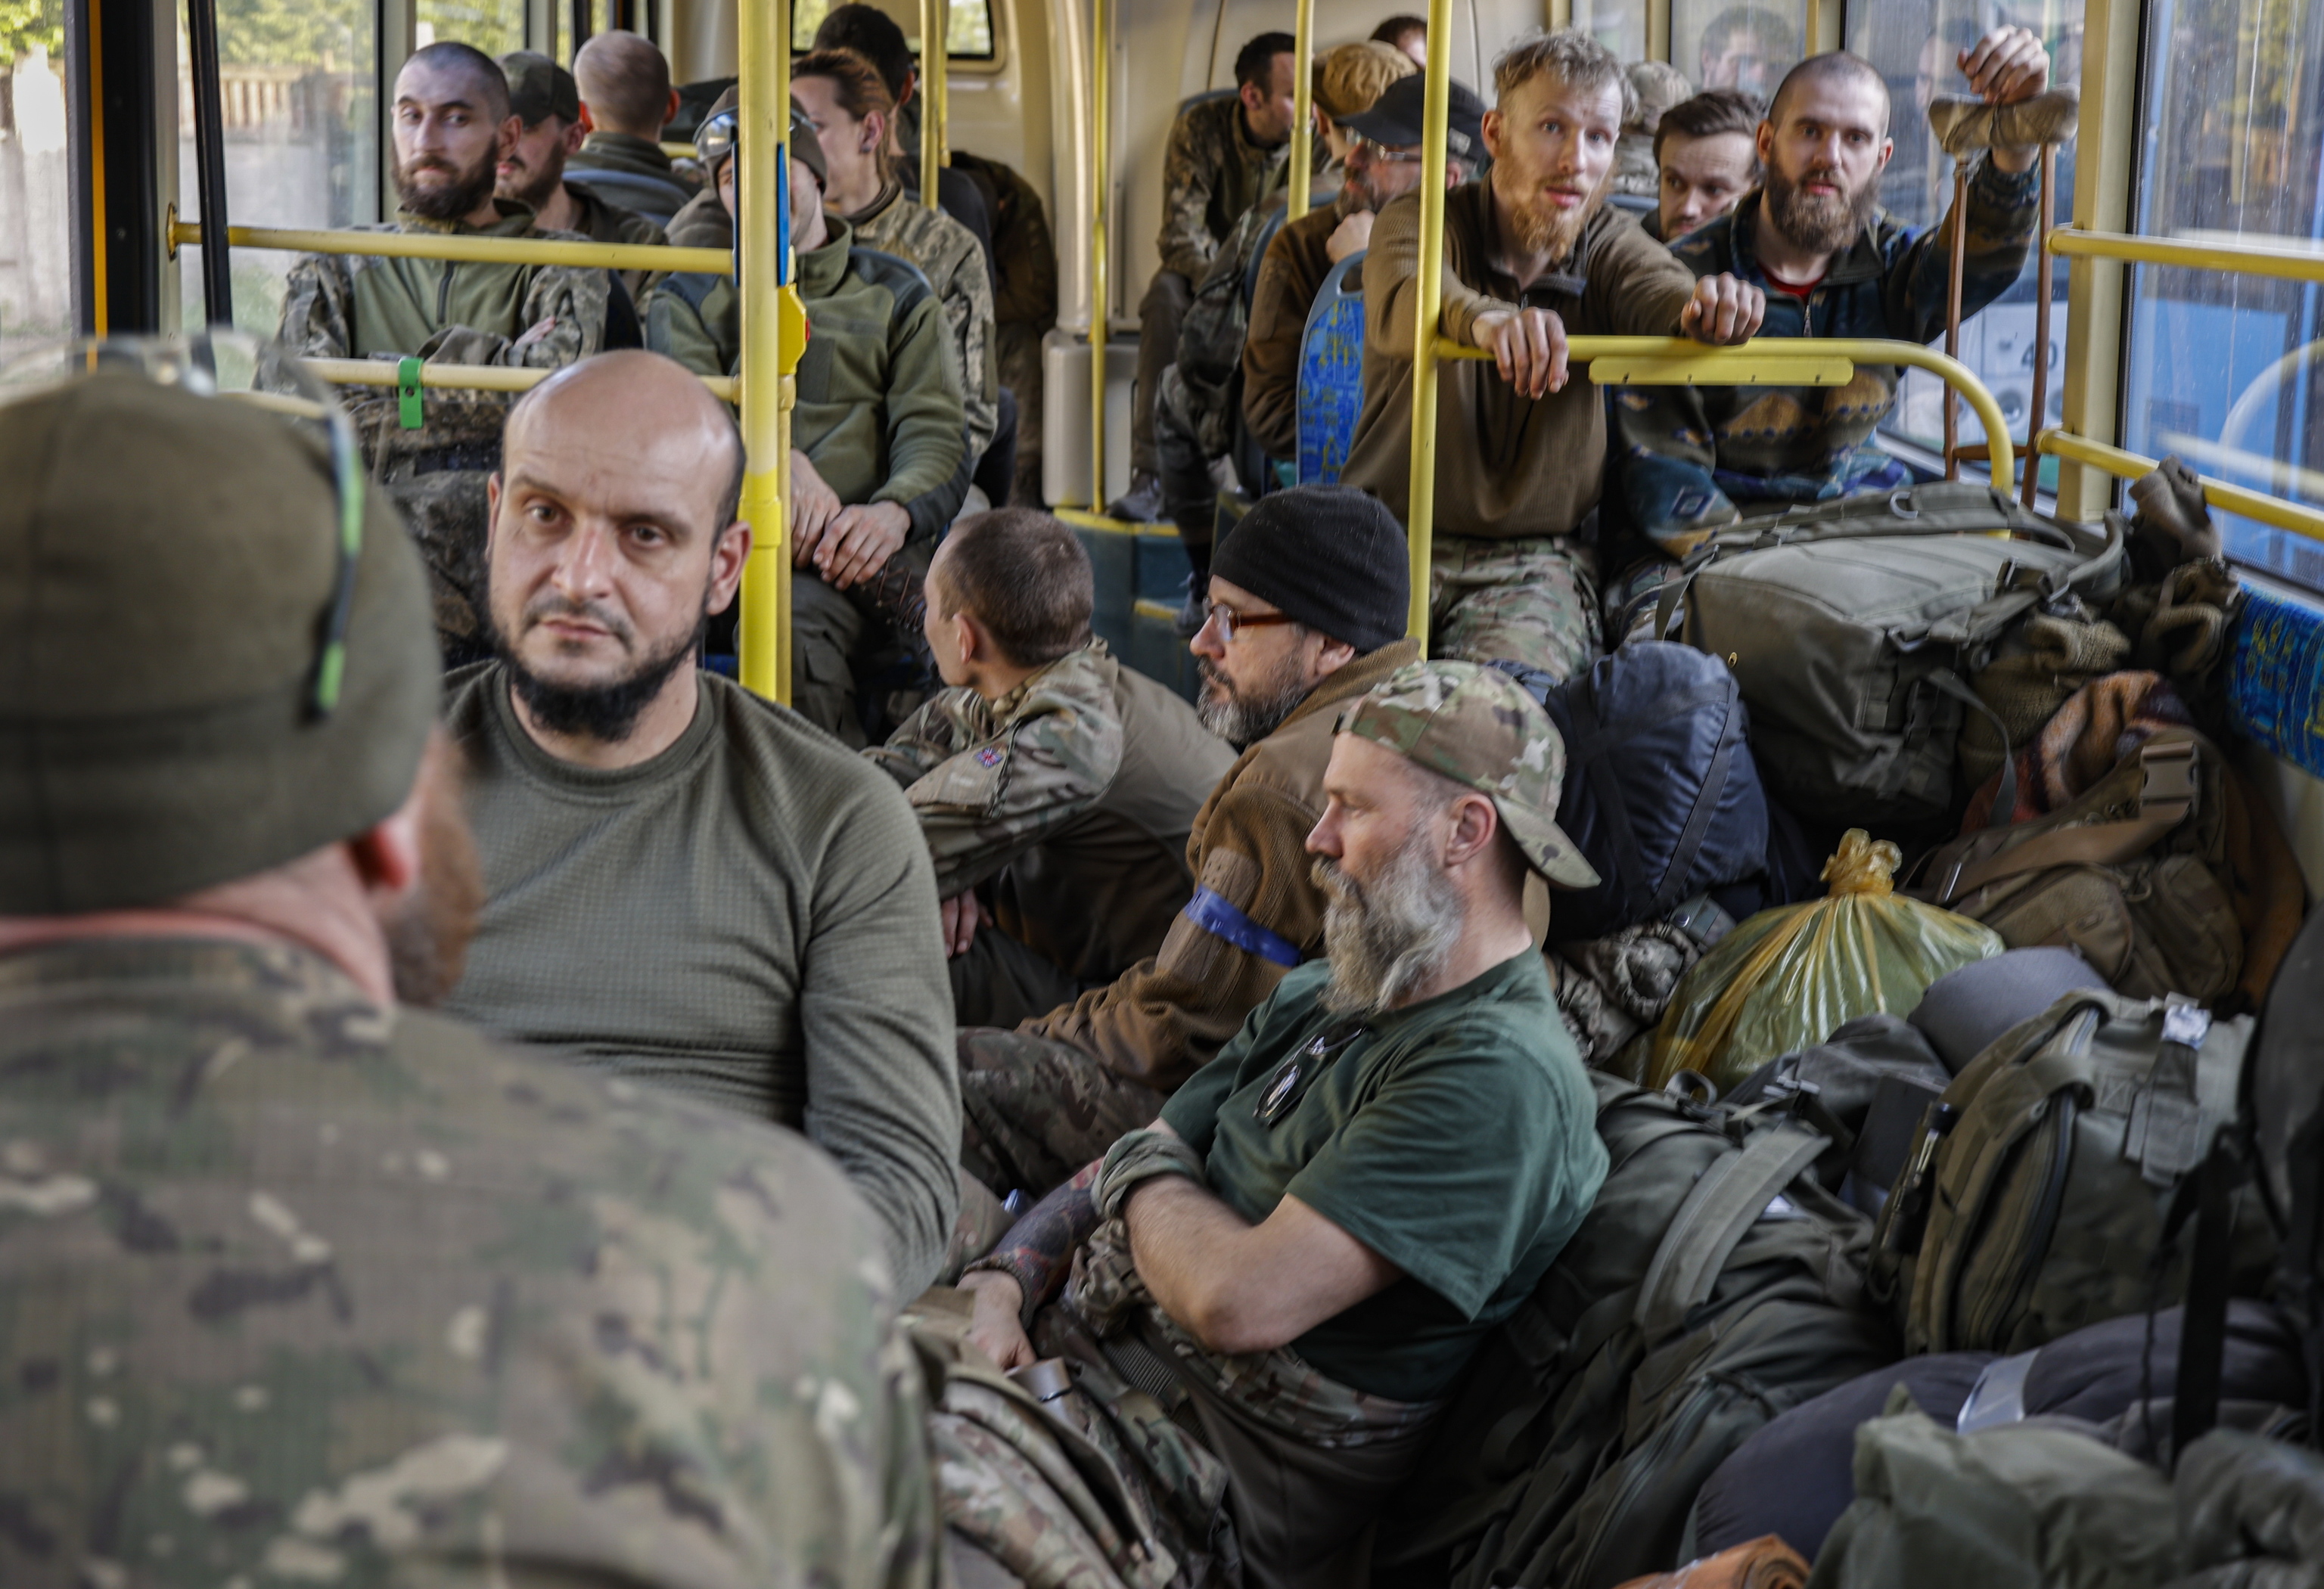 Un tribunal decidirá el destino de los combatientes ucranianos de Azovstal tras su rendición